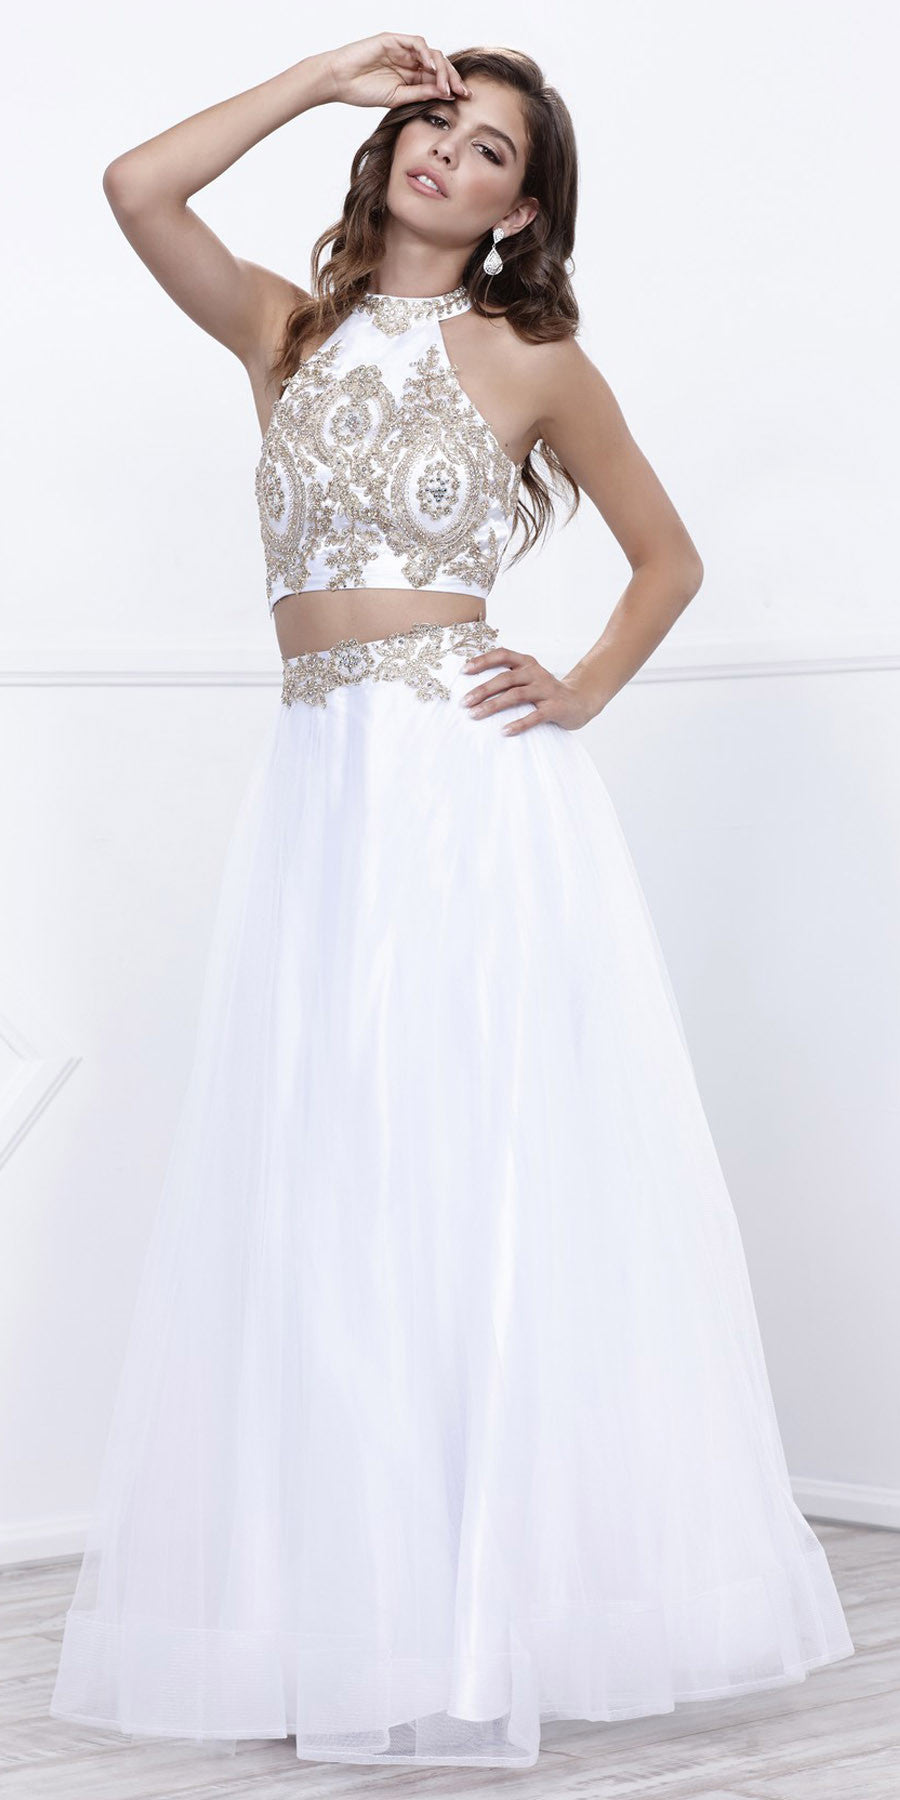 white prom skirt